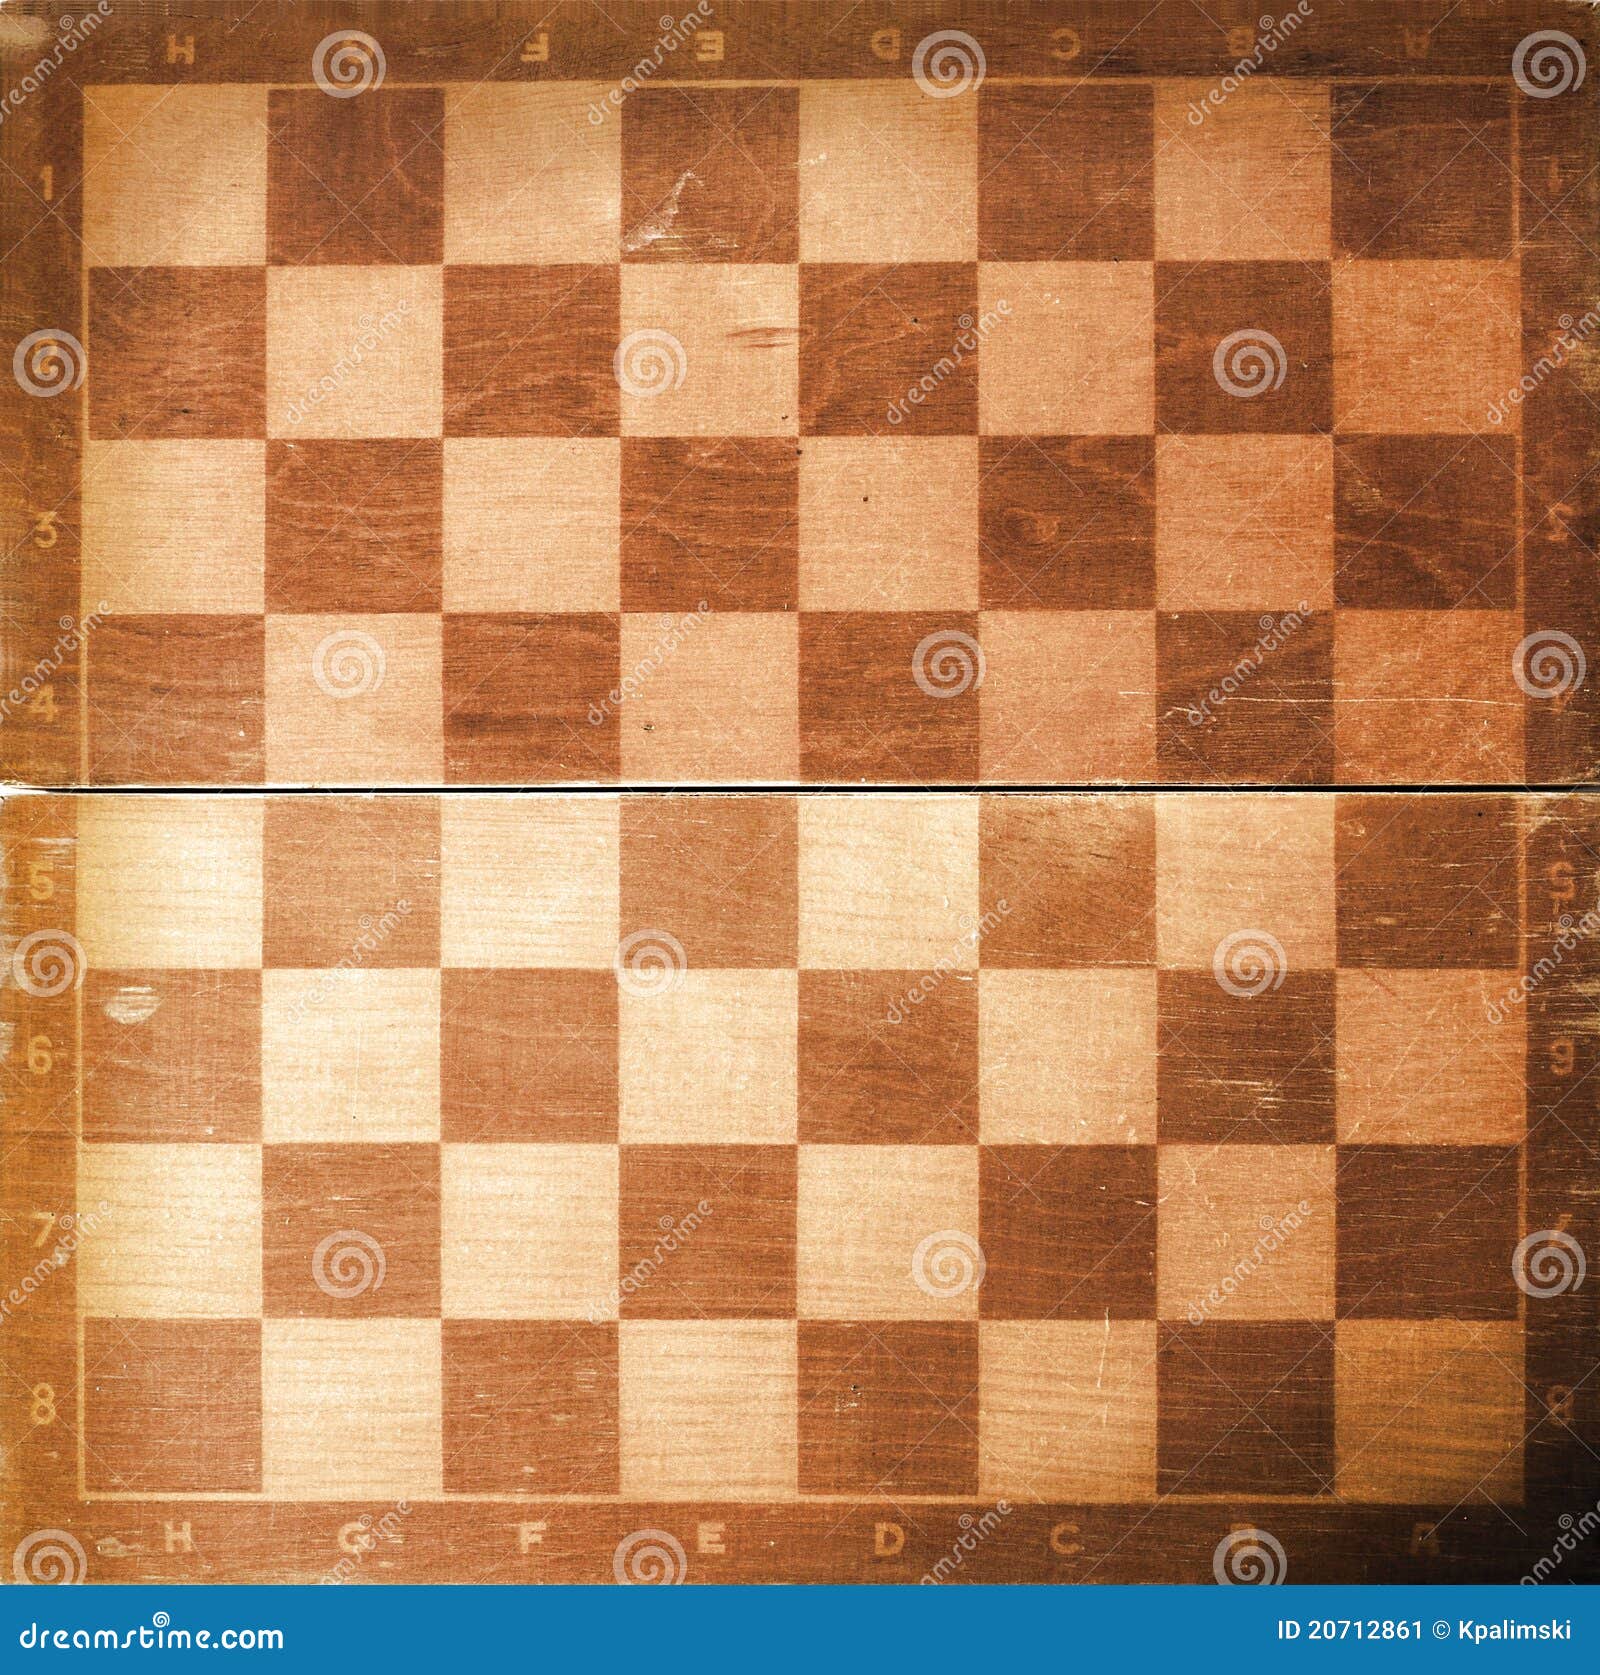 Textura xadrez Stock Photos, Royalty Free Textura xadrez Images